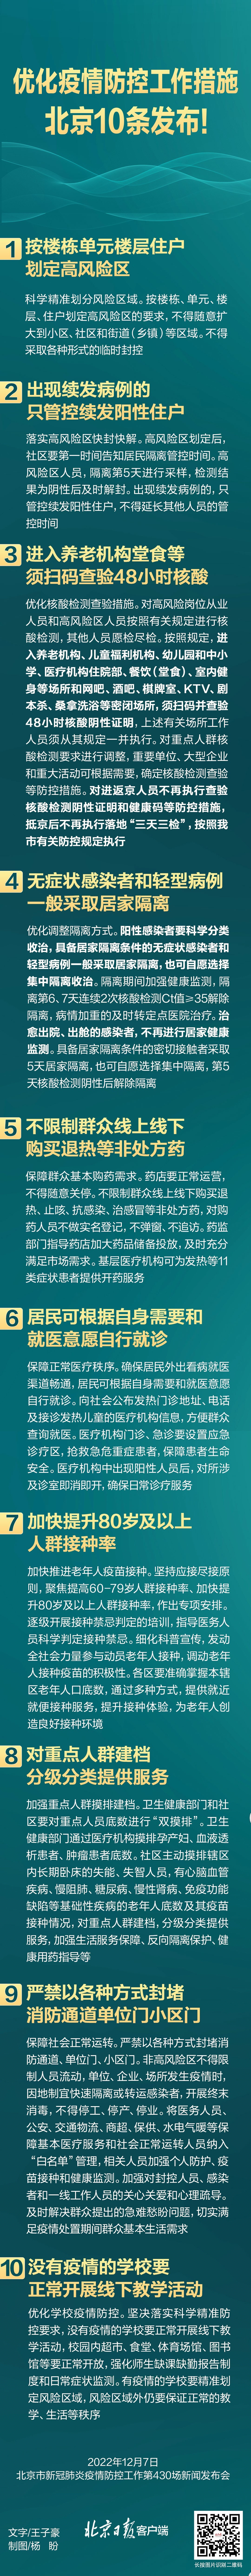 北京、上海防控措施最新调整深航江苏分公司